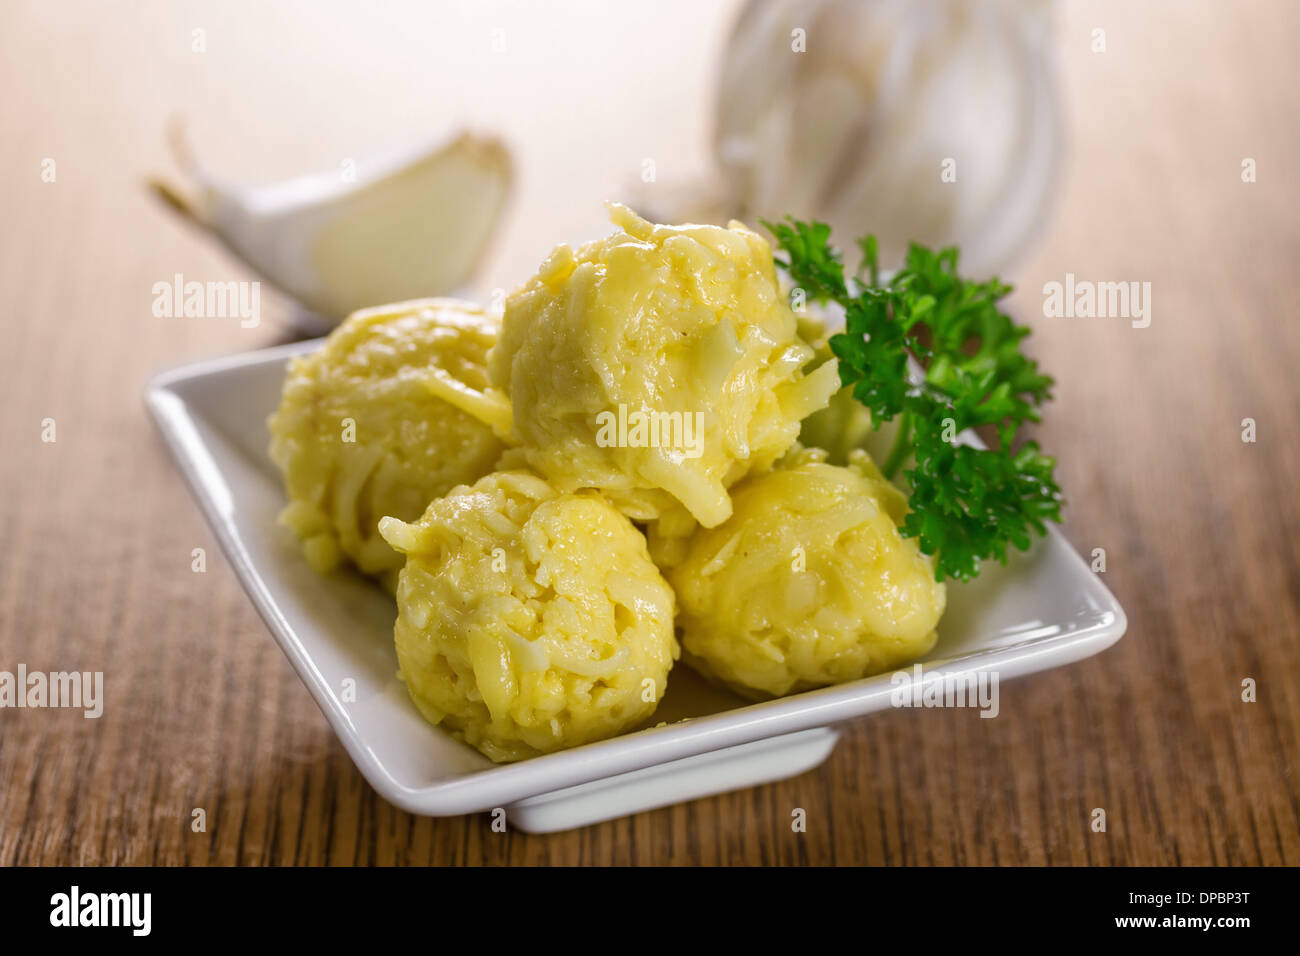 Cheese balls with garlic and mayonnaise Stock Photo